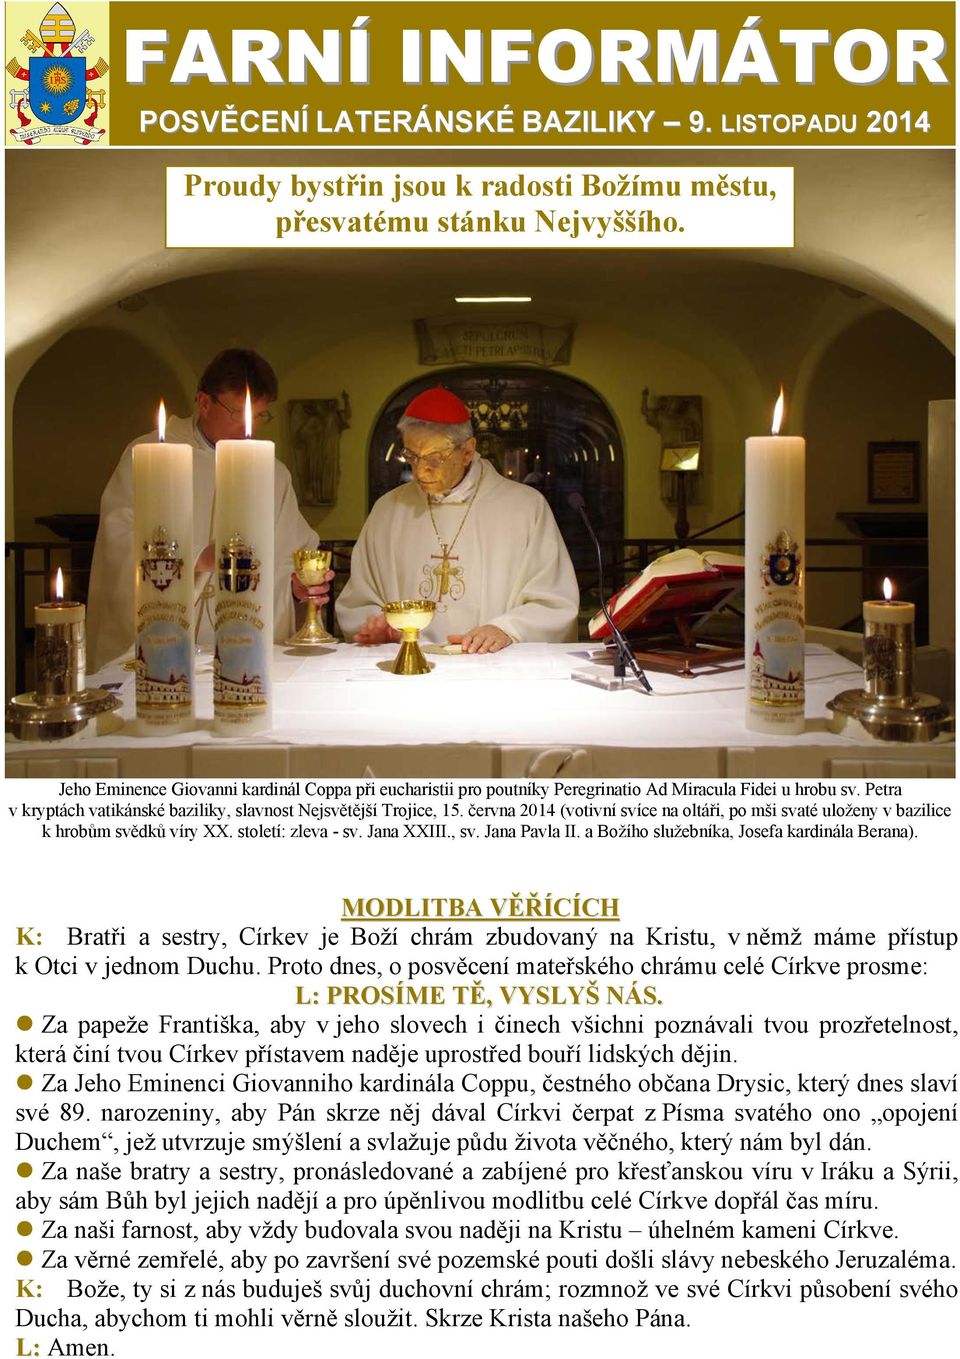 června 2014 (votivní svíce na oltáři, po mši svaté uloženy v bazilice k hrobům svědků víry XX. století: zleva - sv. Jana XXIII., sv. Jana Pavla II. a Božího služebníka, Josefa kardinála Berana).